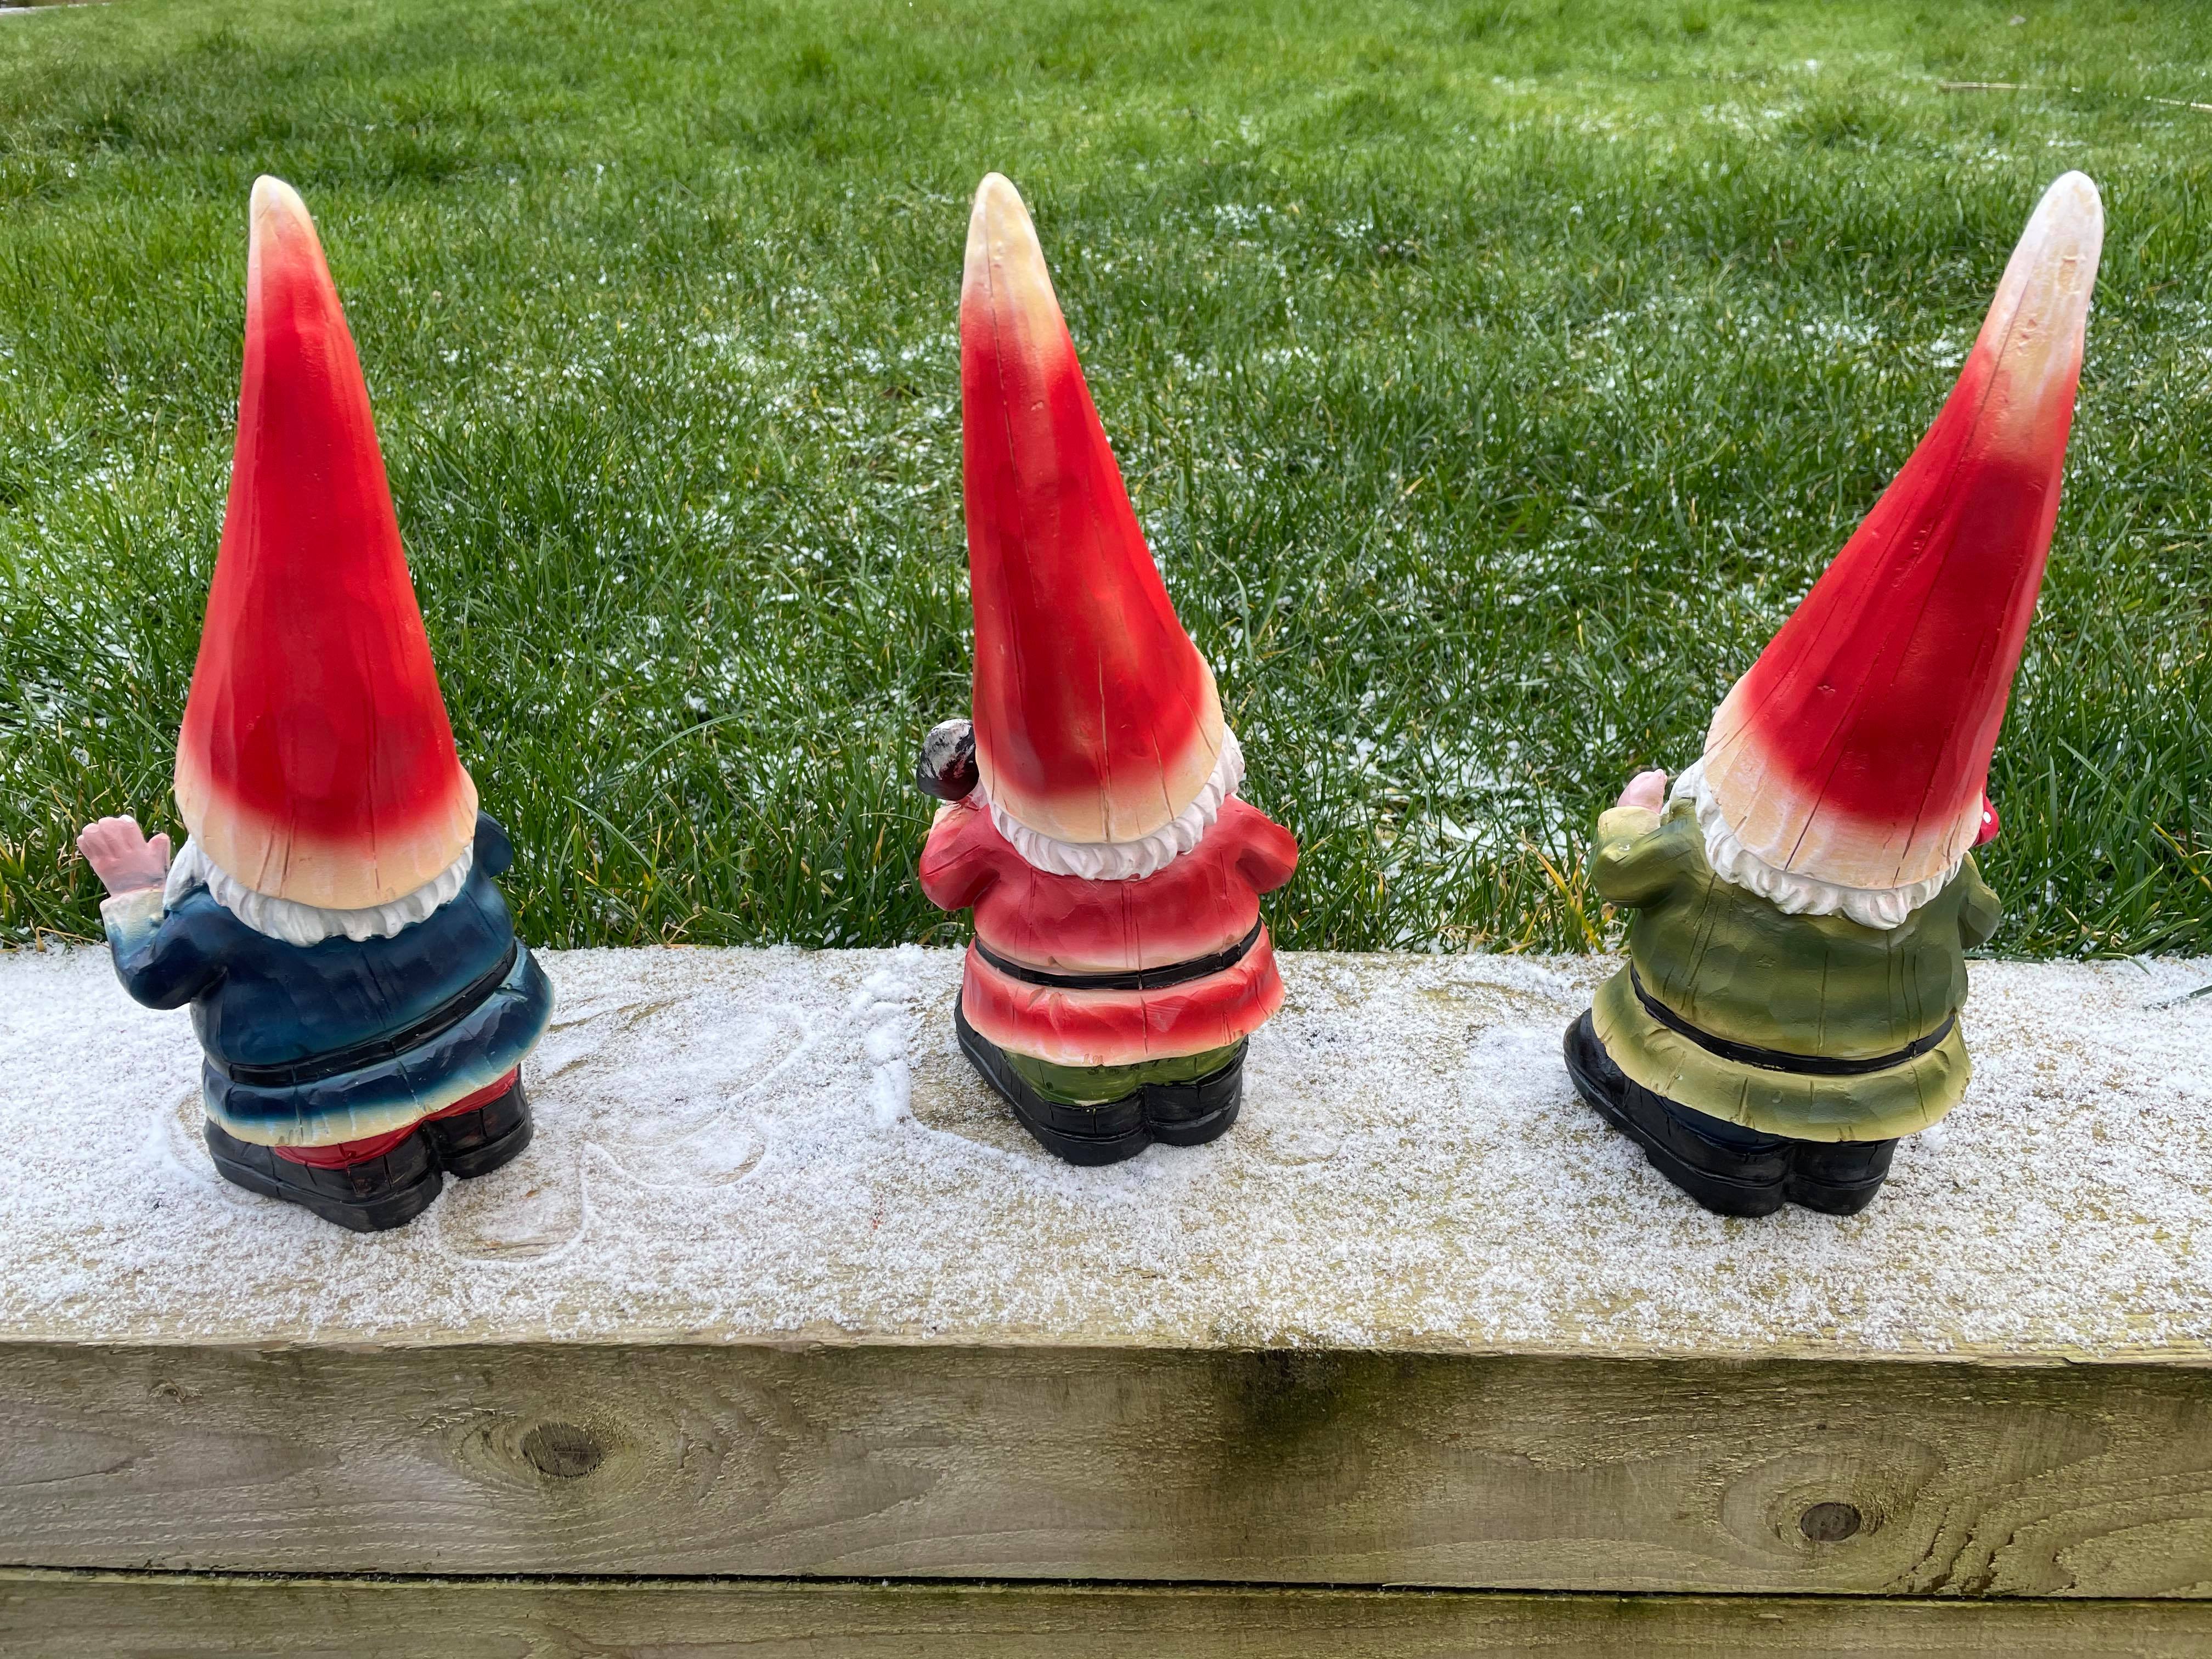 Three Cheeky Gnomes